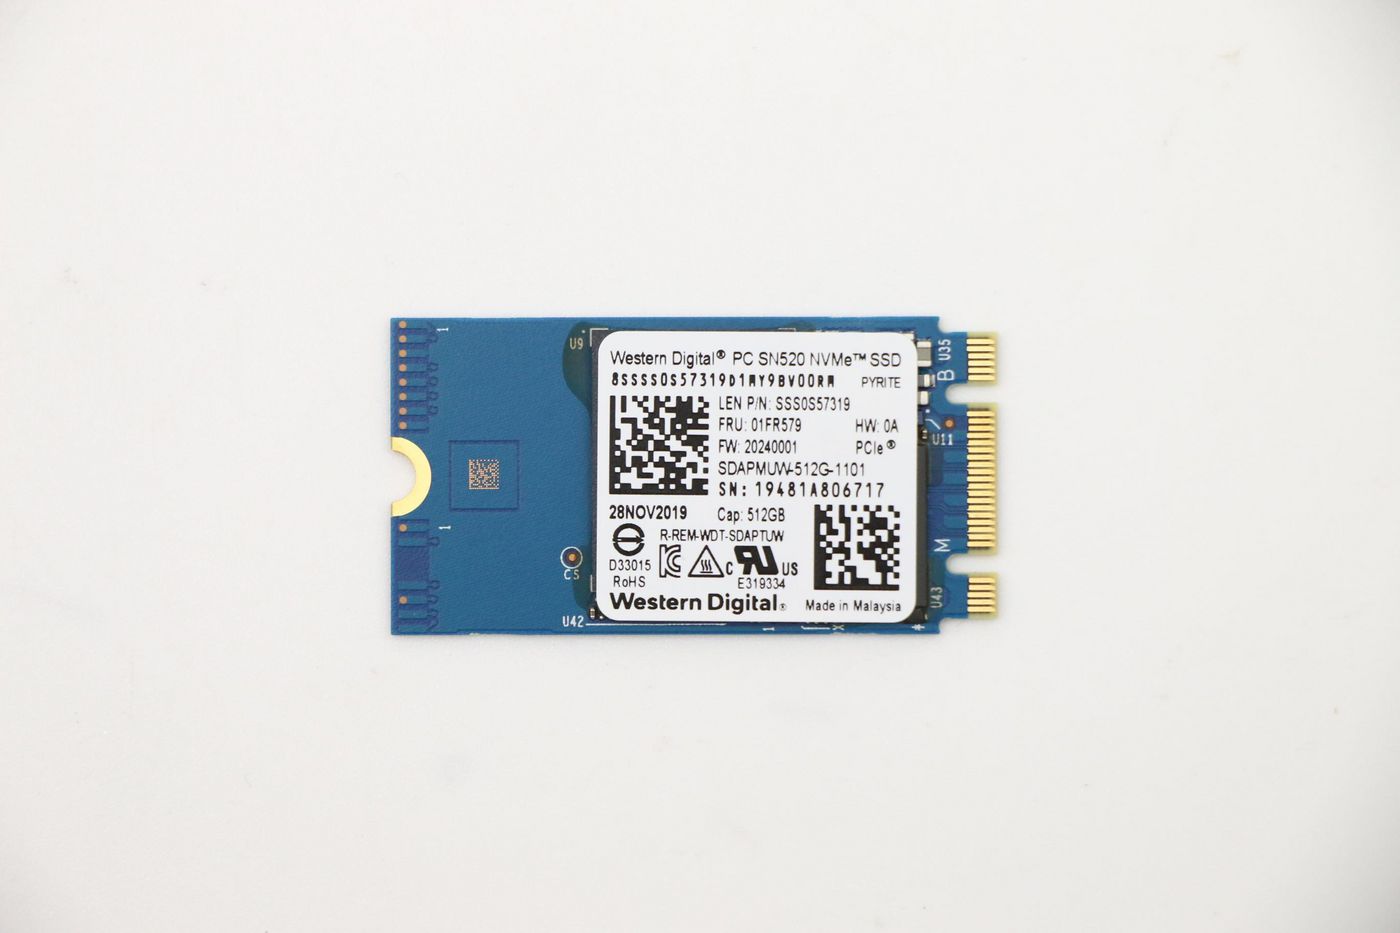 LENOVO Sandisk 1101 512GB M.2 PCIe